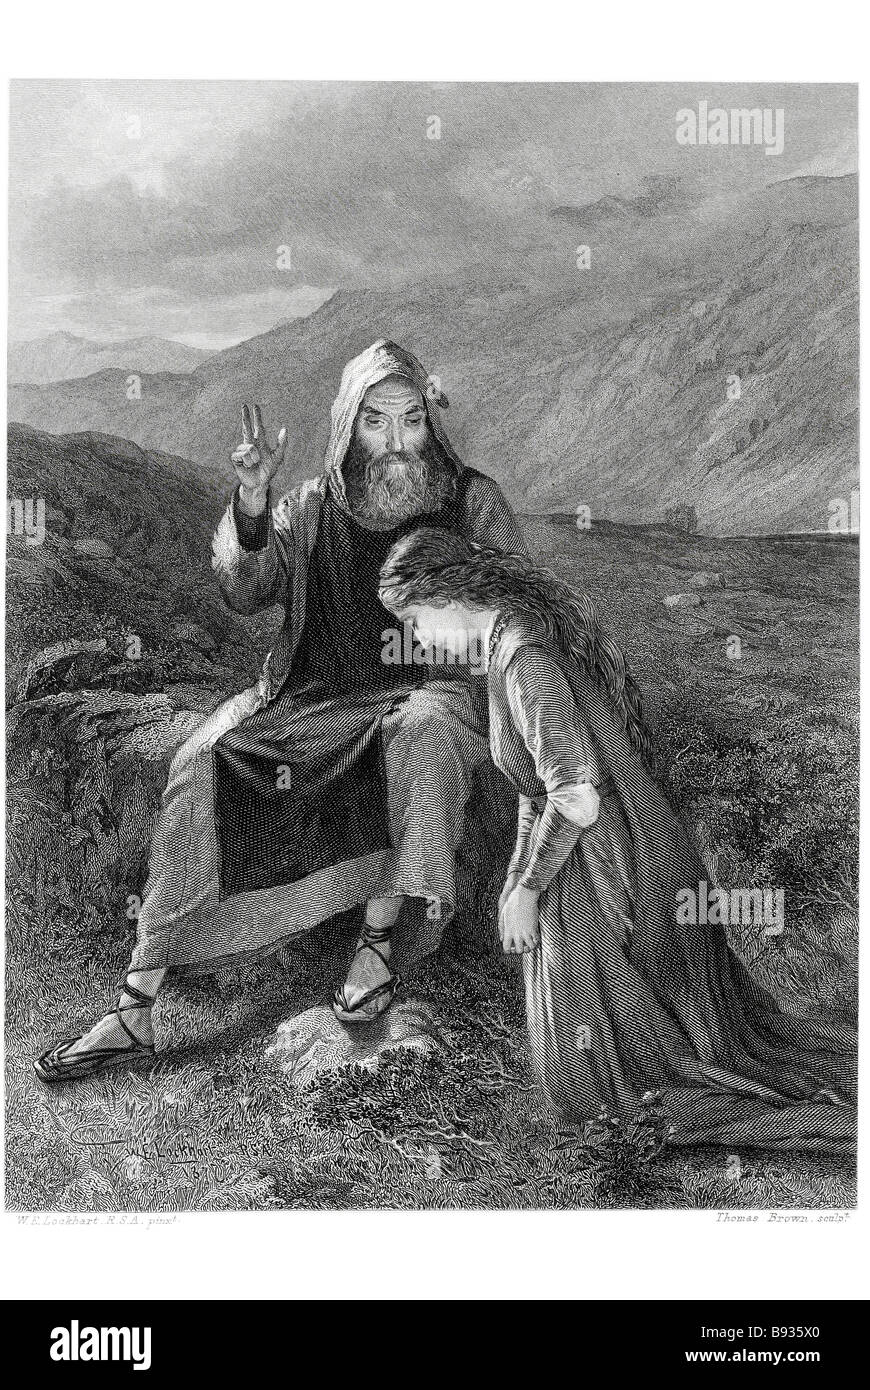 Catherine y padre clemente período sacerdote vestido campo fuera orando niño niña hombre adulto obispo valle salvaje de alta montaña Foto de stock